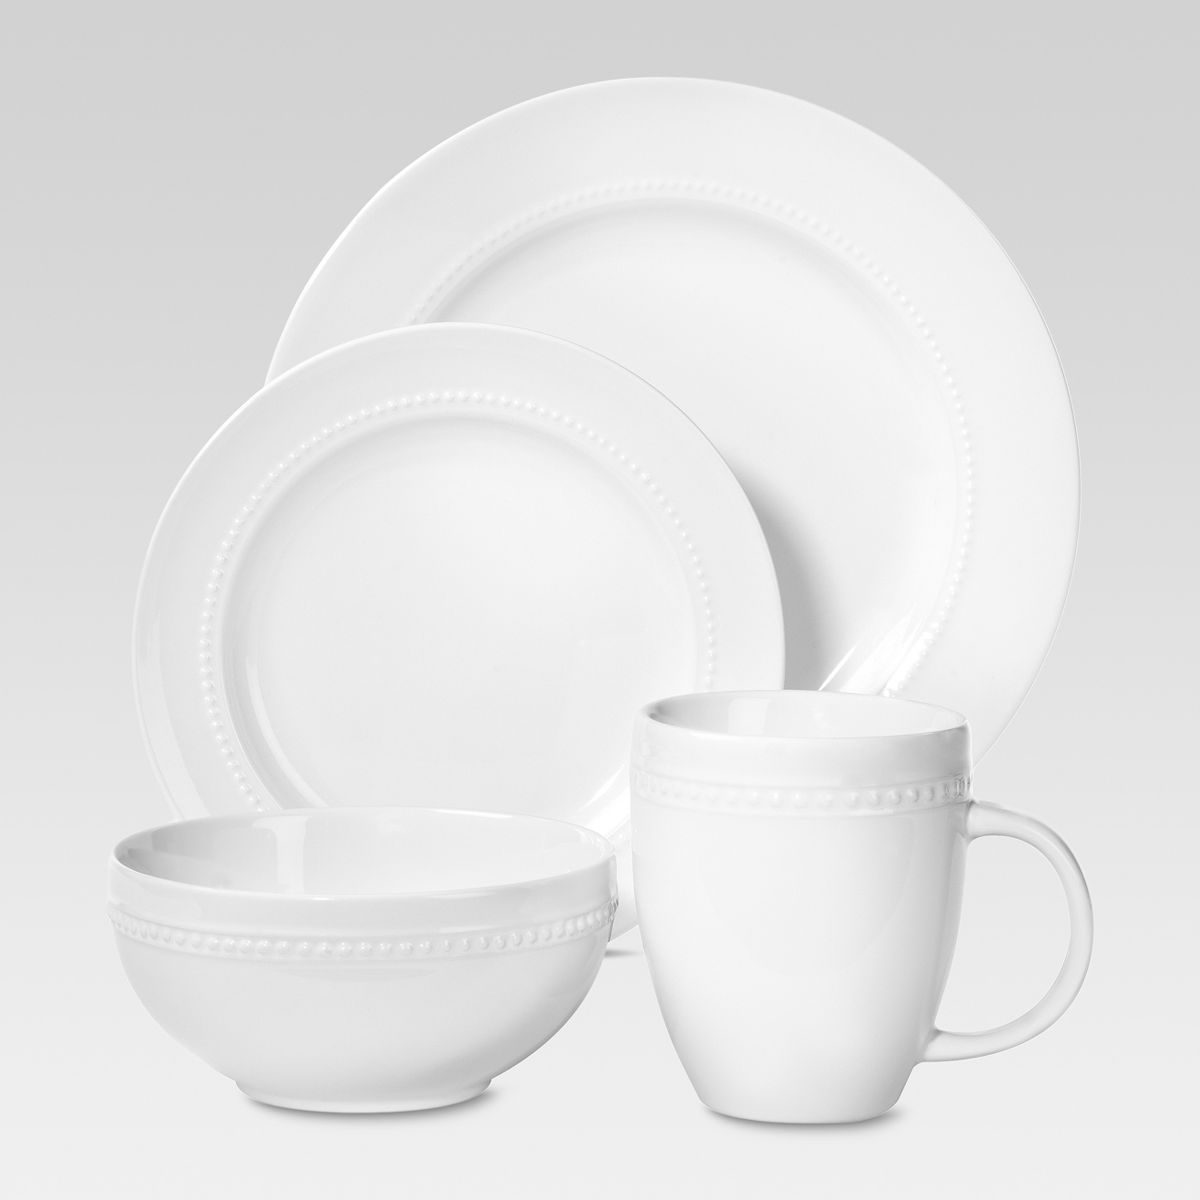 16pc Porcelain Beaded Rim Dinnerware Set White - Threshold™ | Target